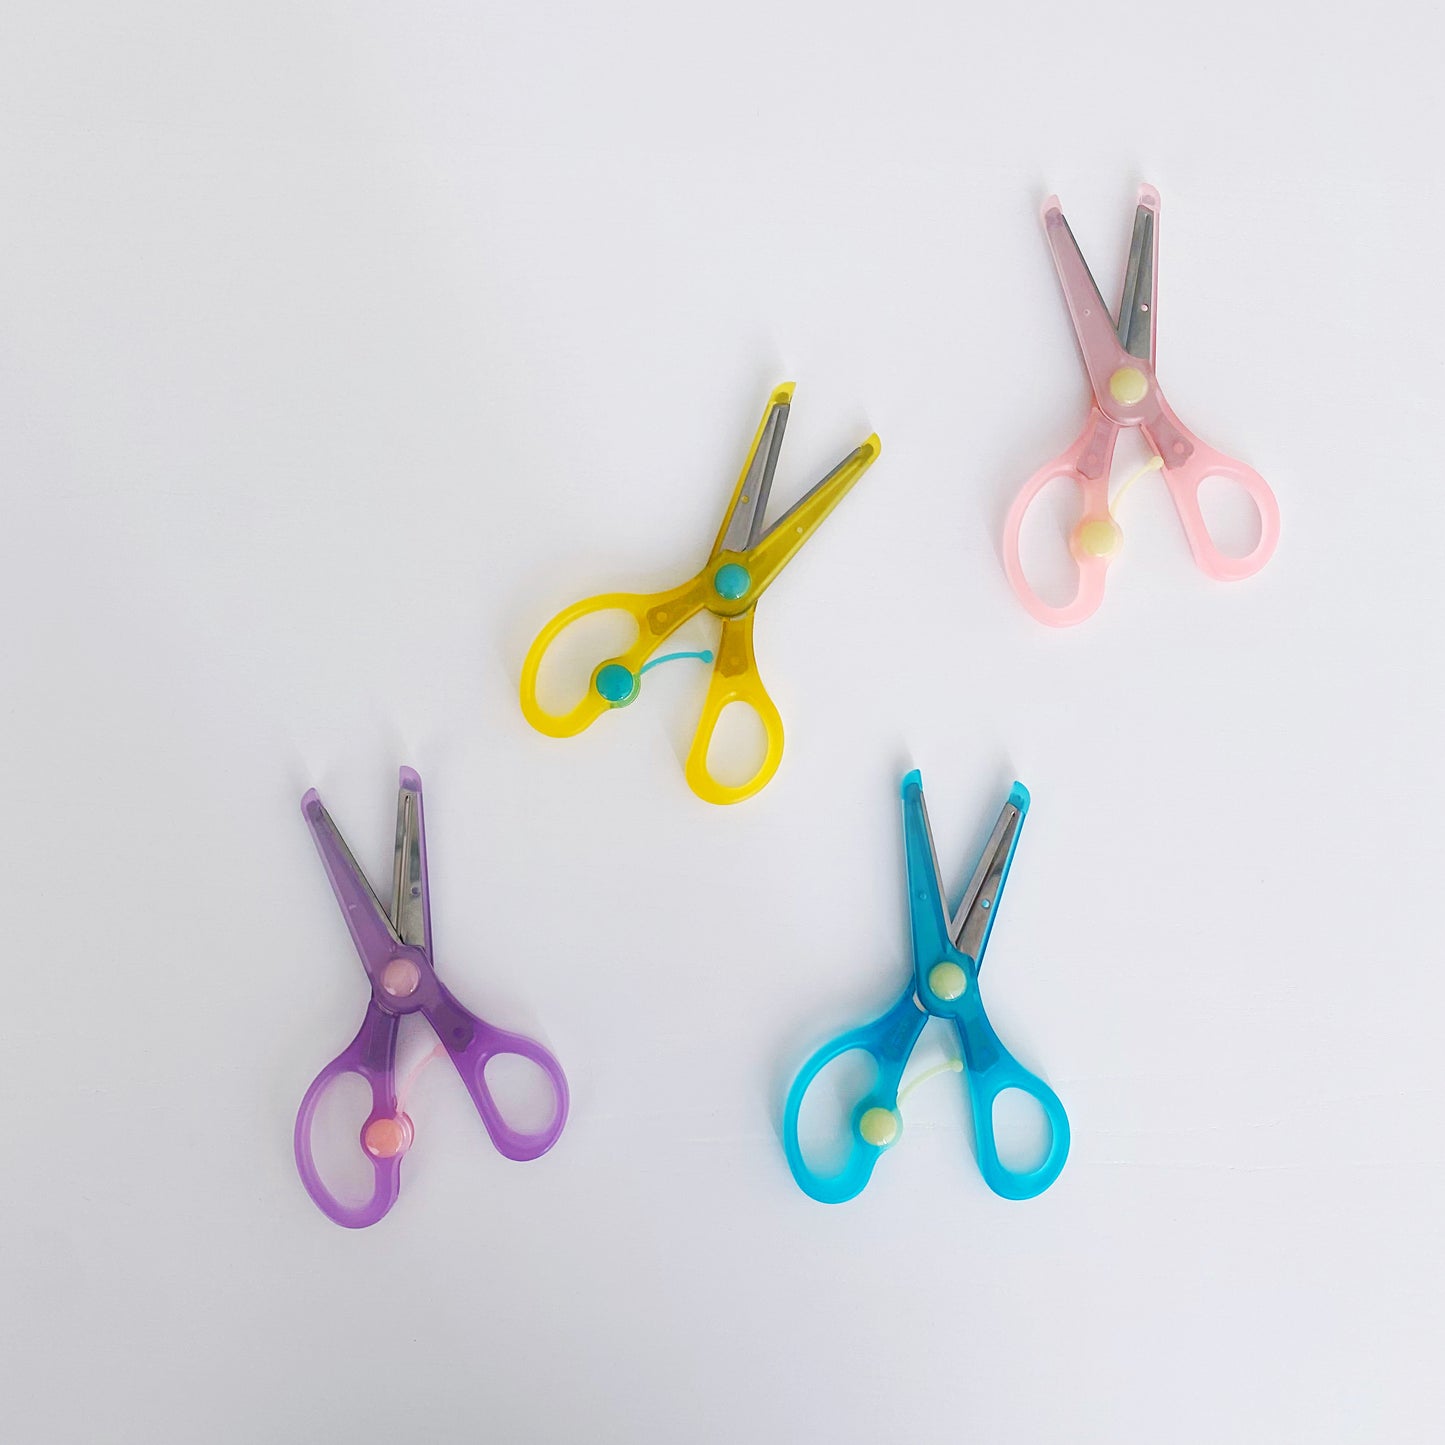 Yellow Children's Training Craft Scissors